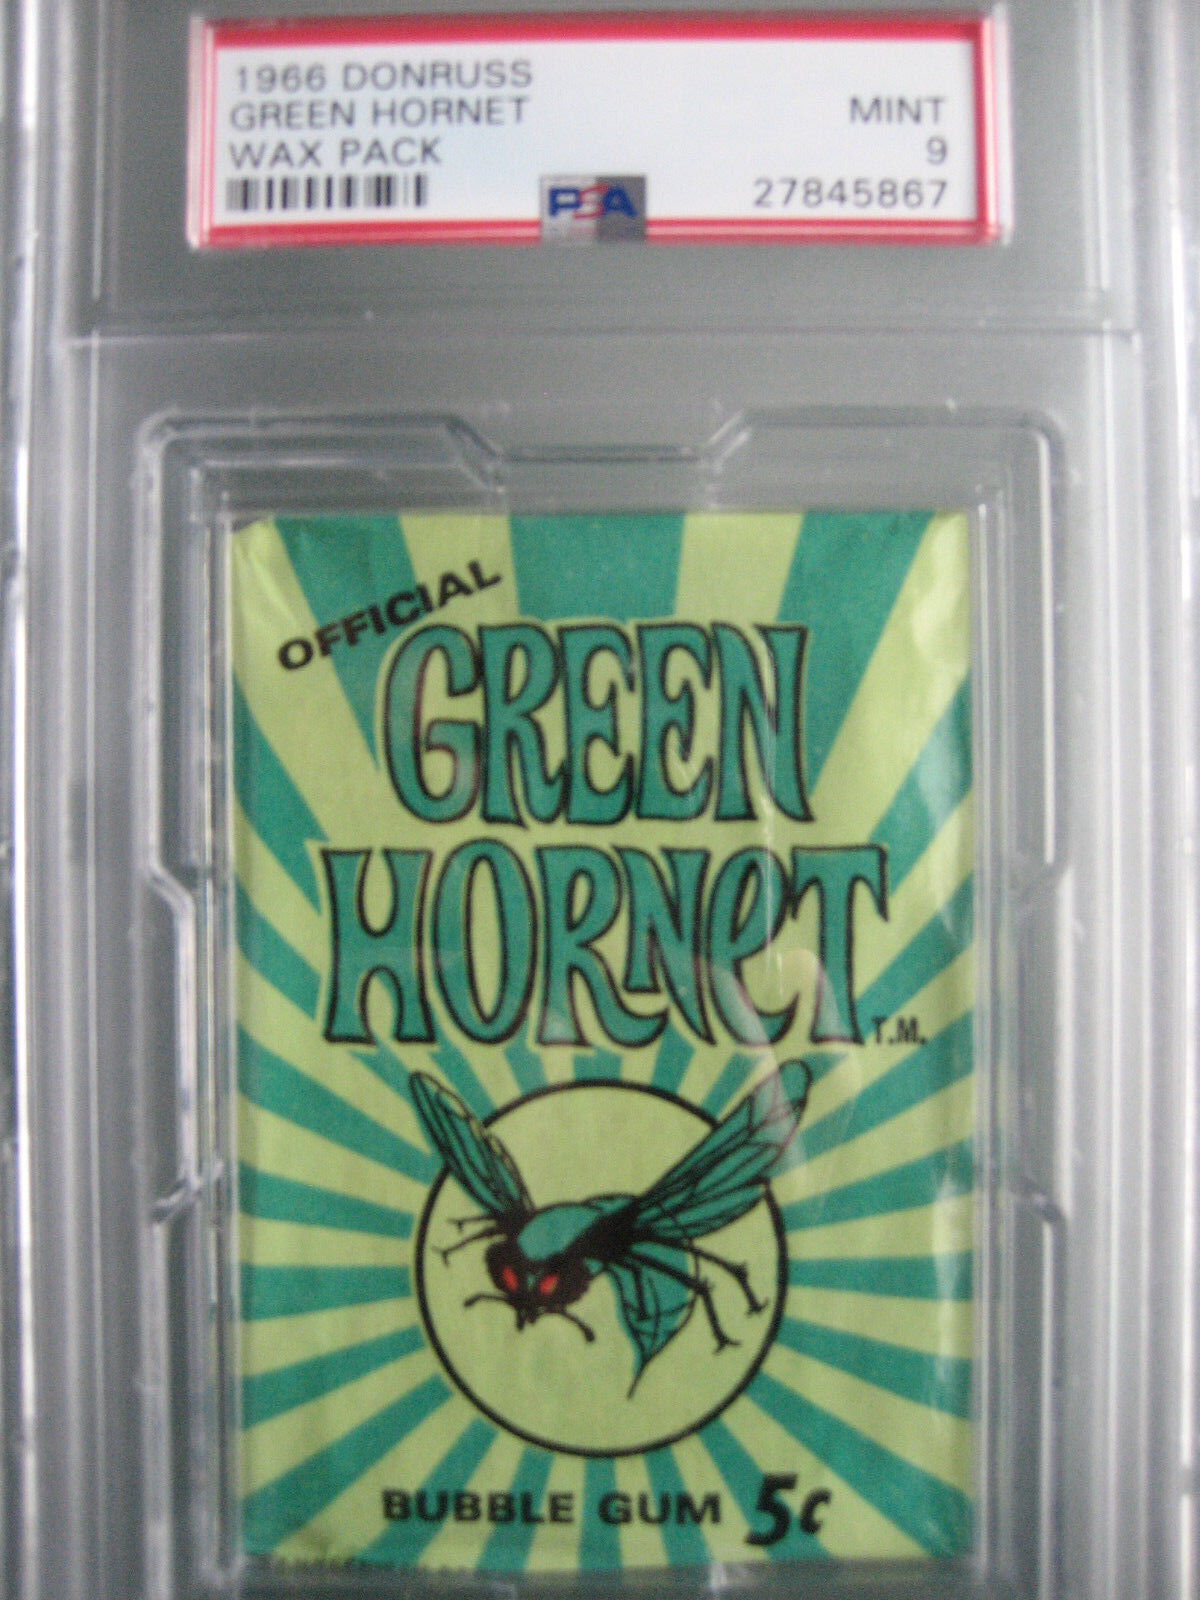 1966 Donruss Green Hornet Color Photo Cards Wax Pack PSA 9 Mint